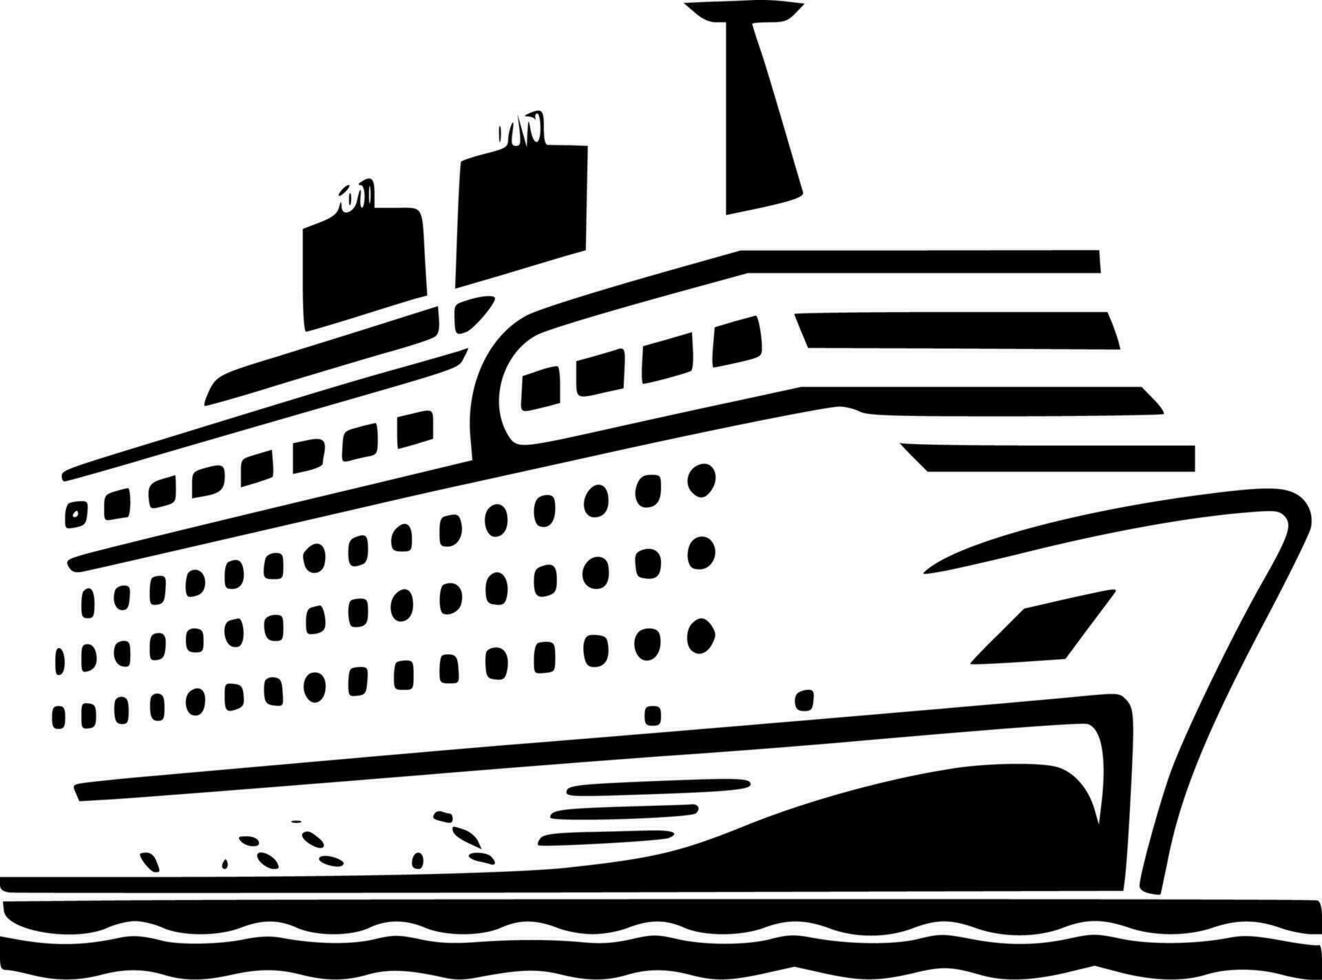 reis schip - minimalistische en vlak logo - vector illustratie